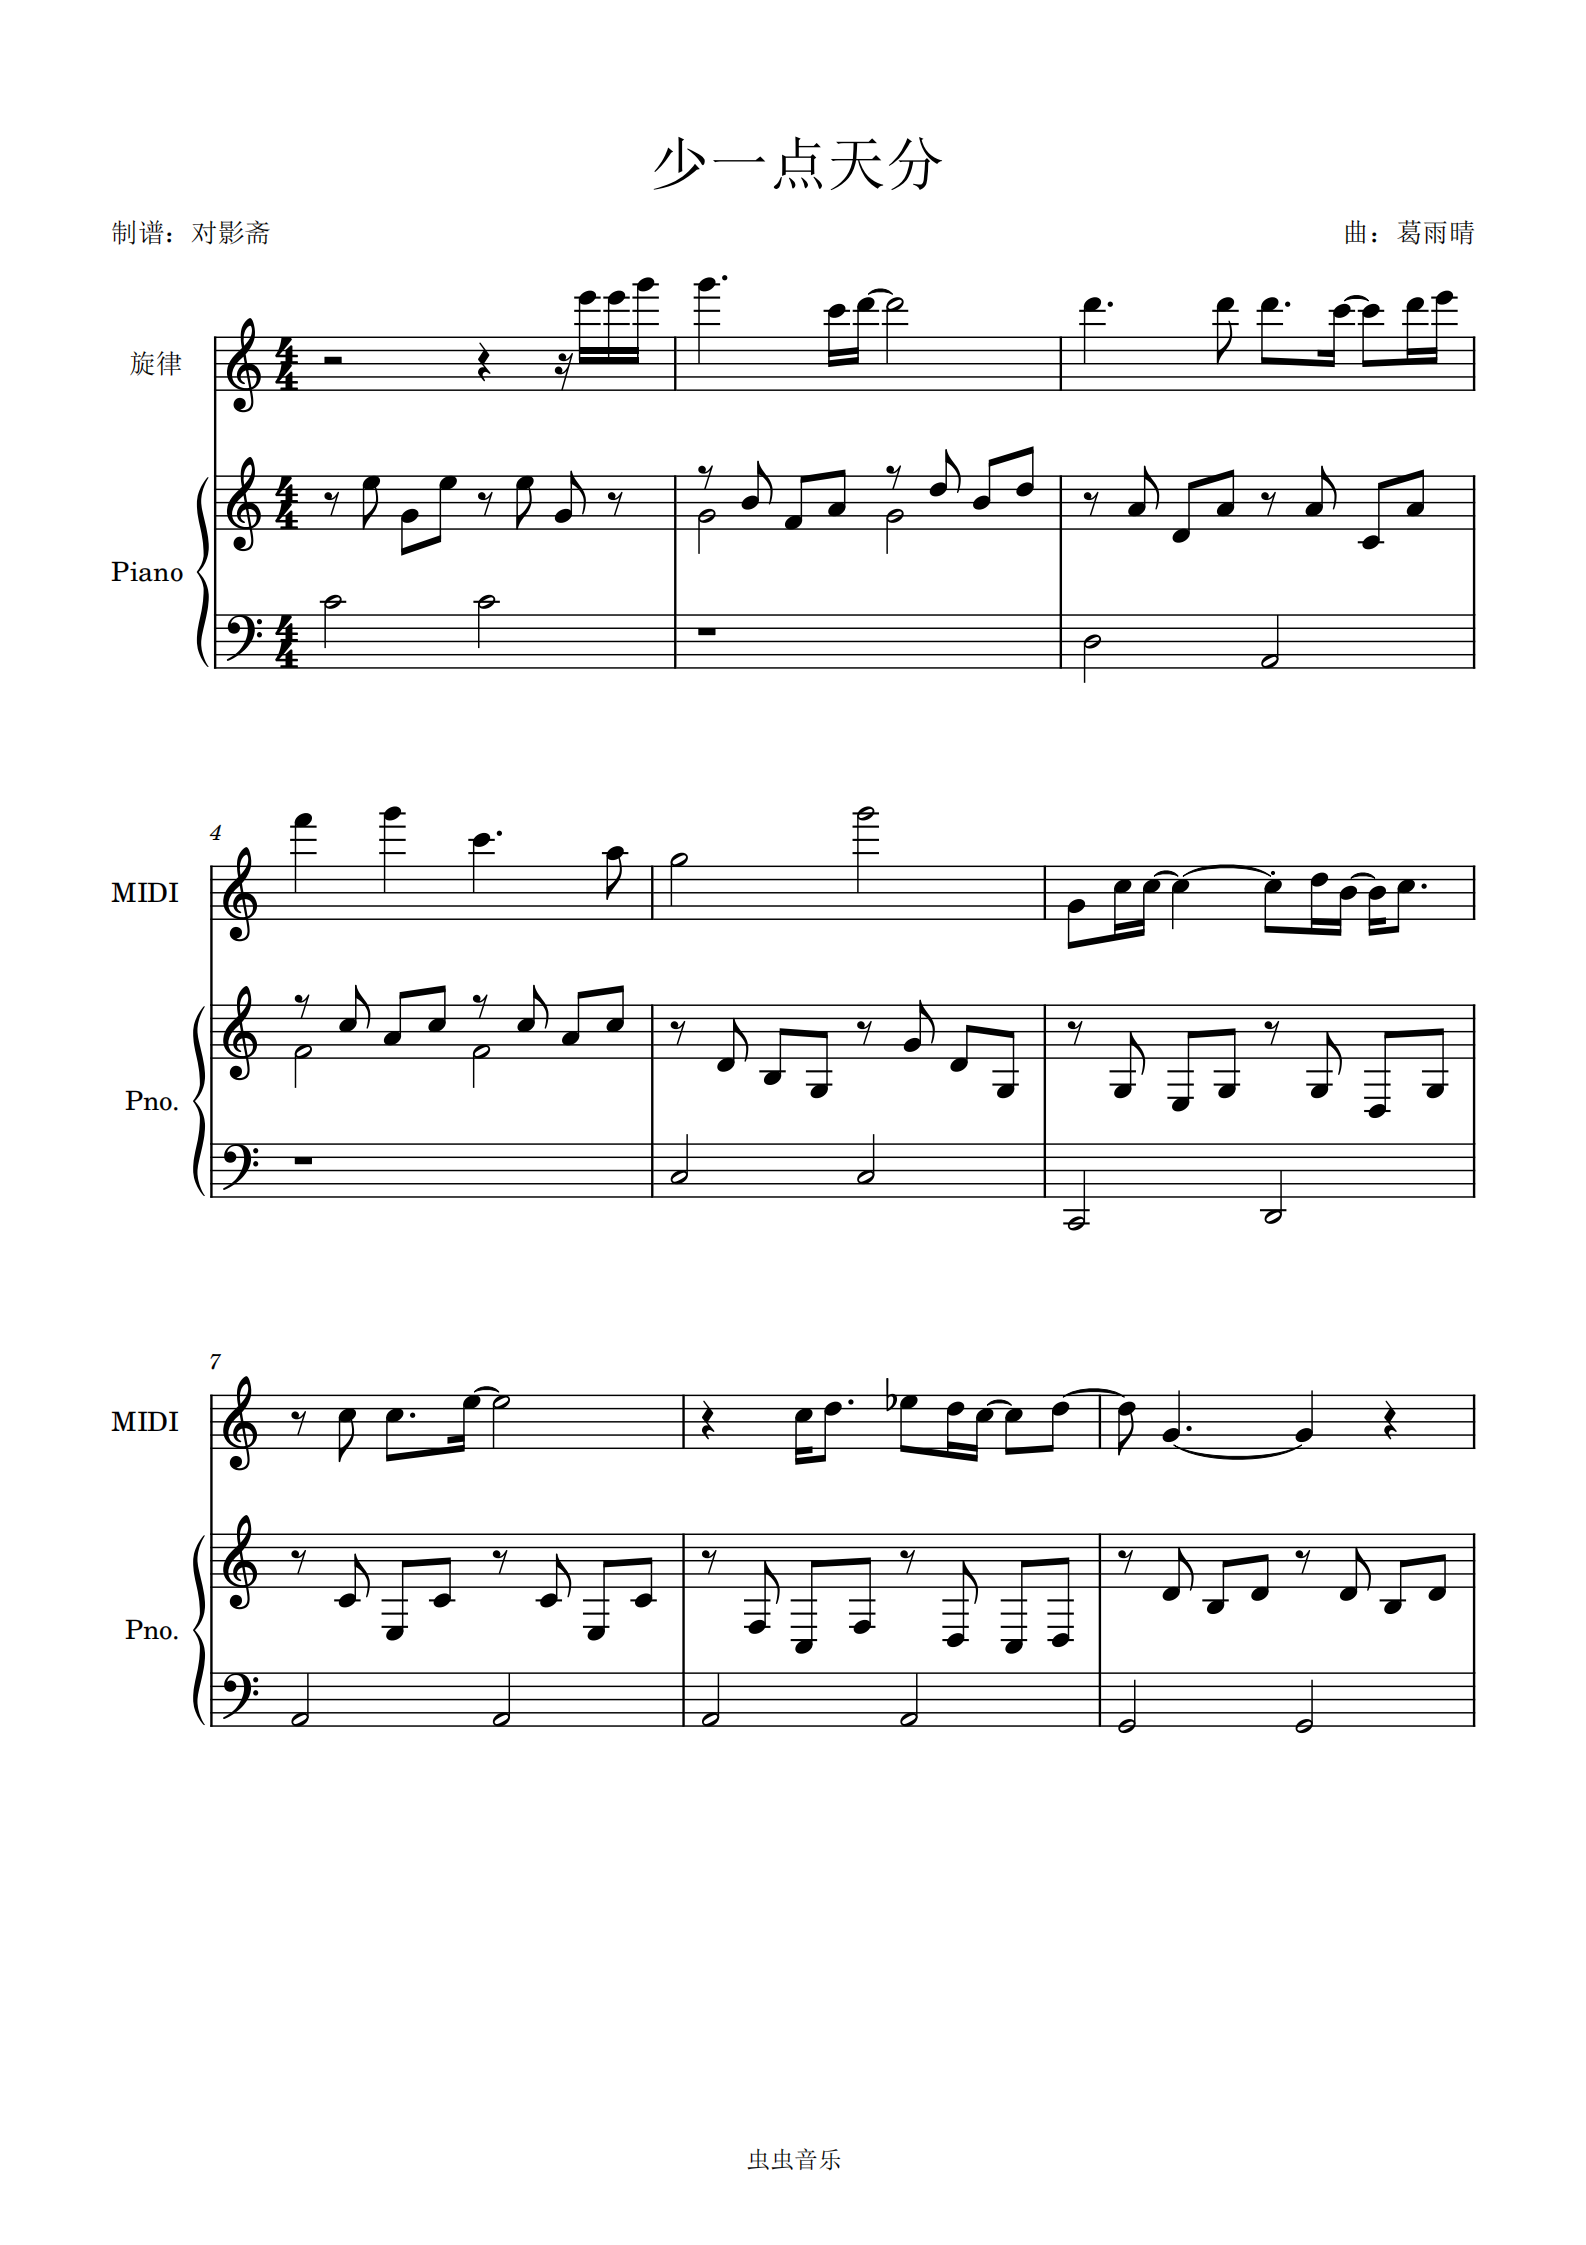 少一点天分-俏摩女抢头婚ED五线谱预览4-钢琴谱文件（五线谱、双手简谱、数字谱、Midi、PDF）免费下载